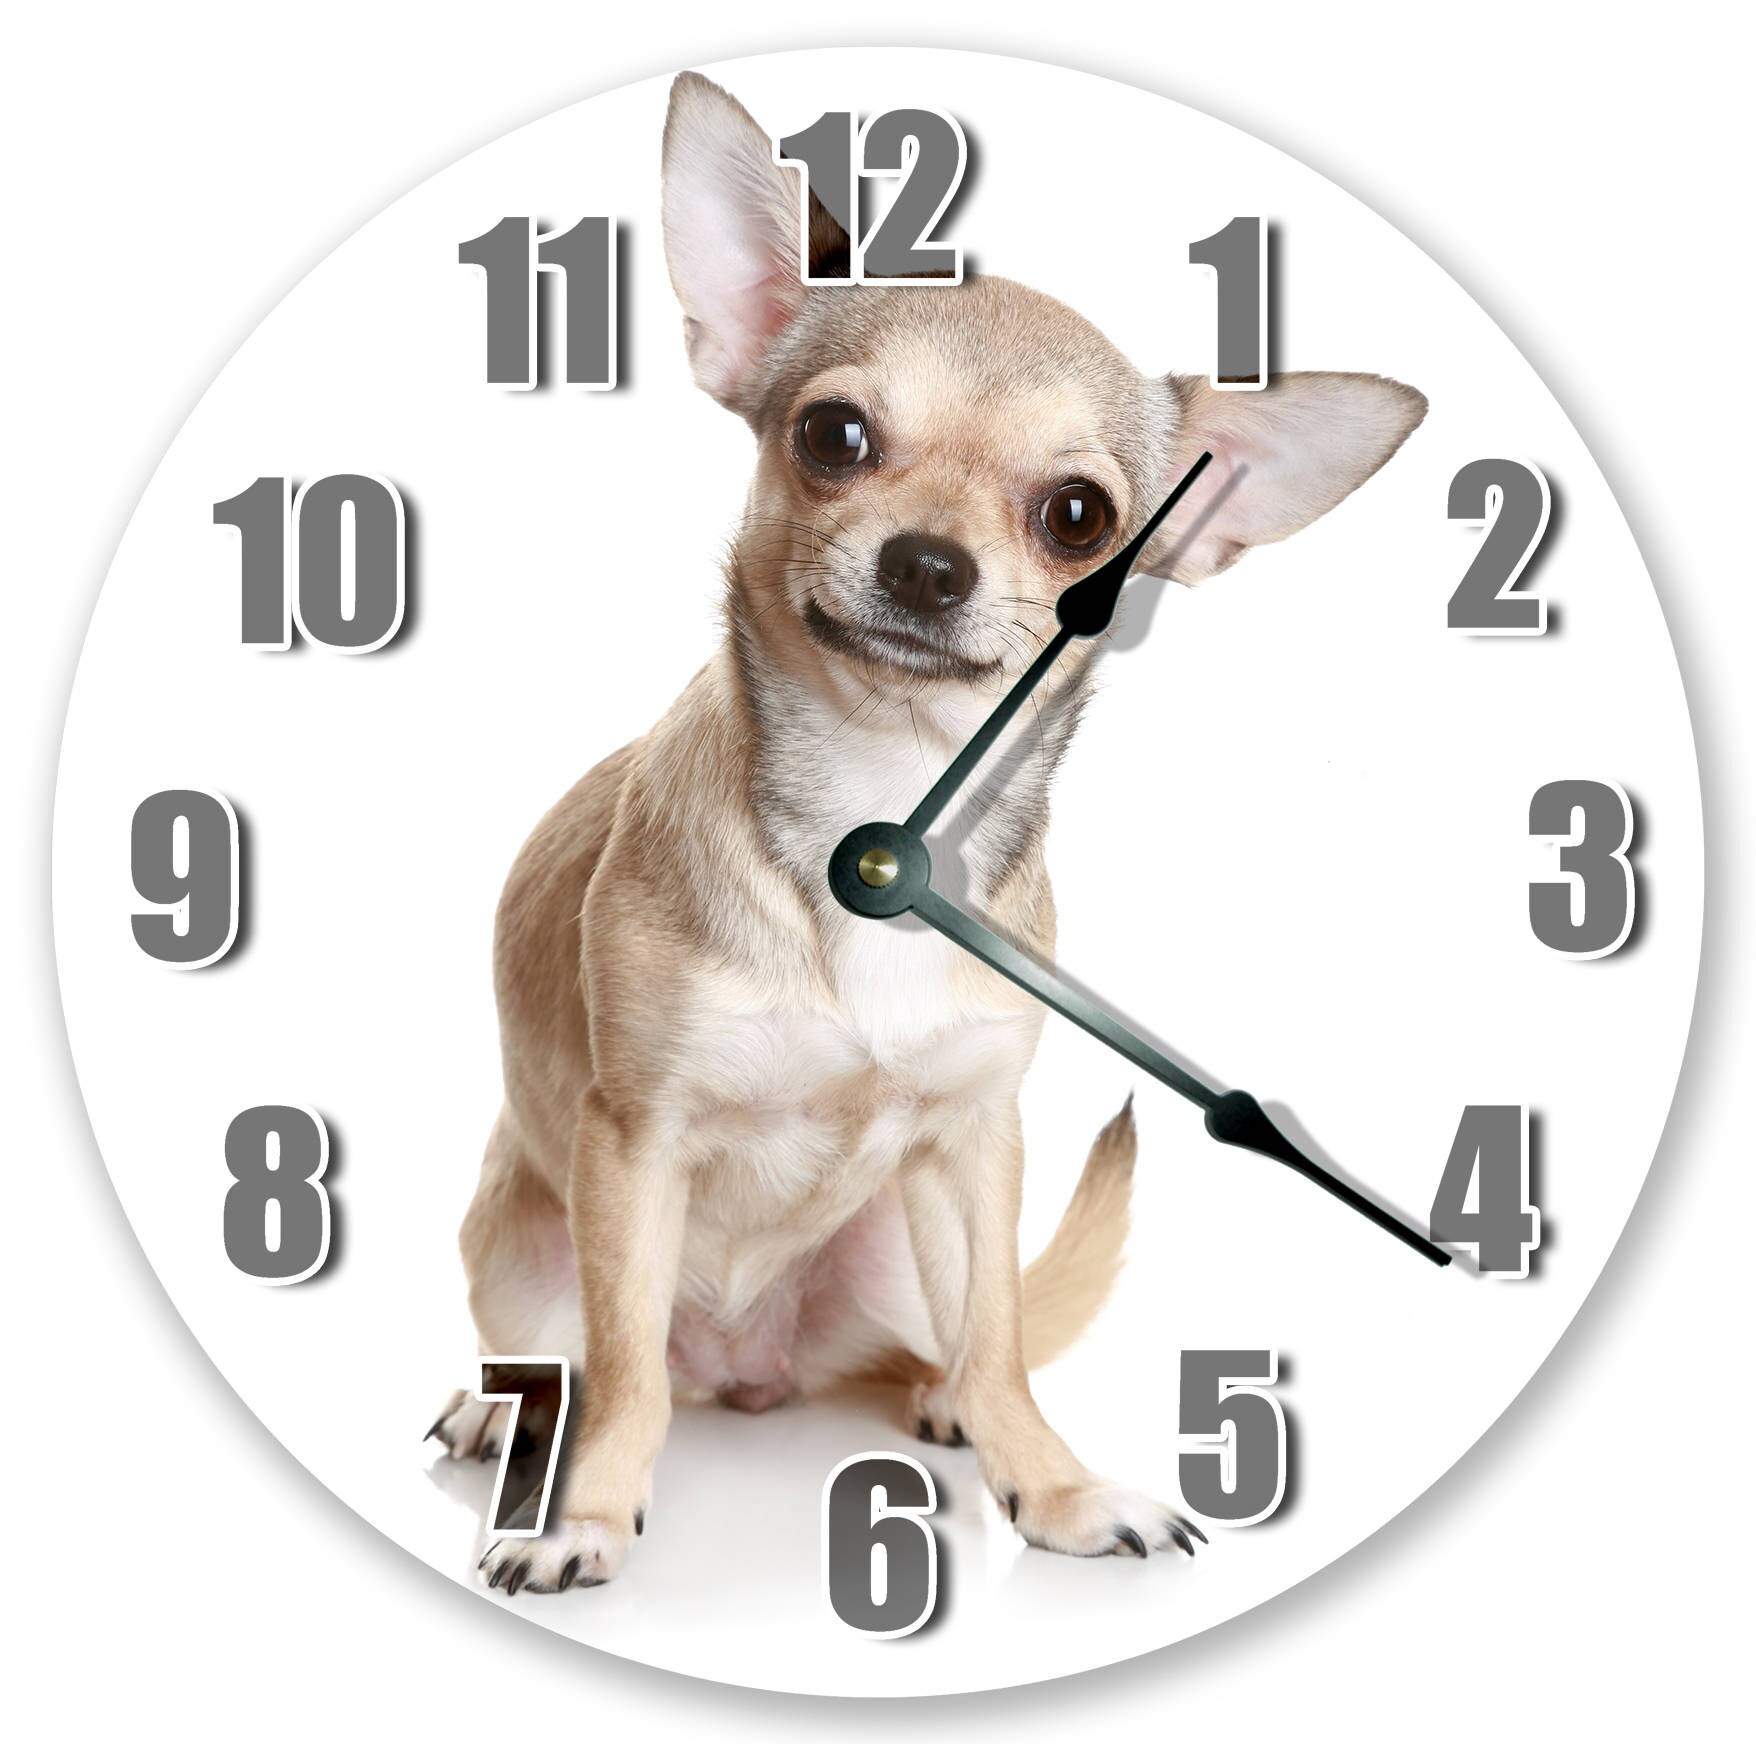 Часы про животных. Часы животные. Собака и часы. Будильник-питомец. Часы с чихуахуа.